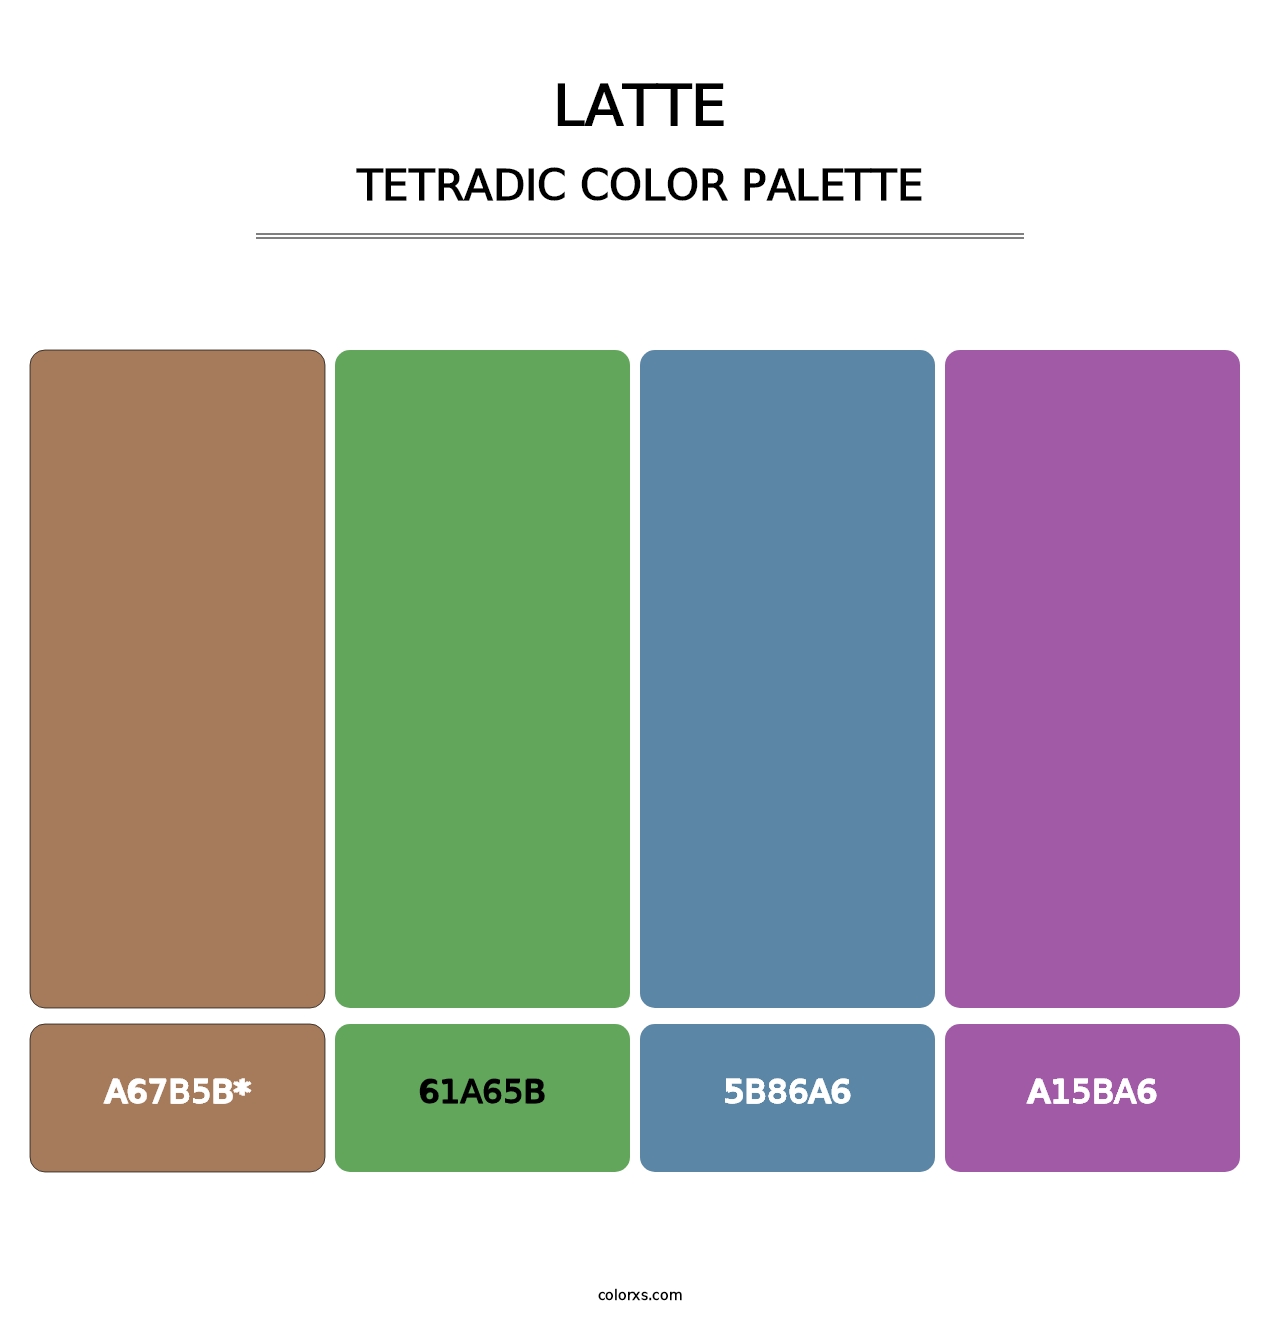 Latte - Tetradic Color Palette